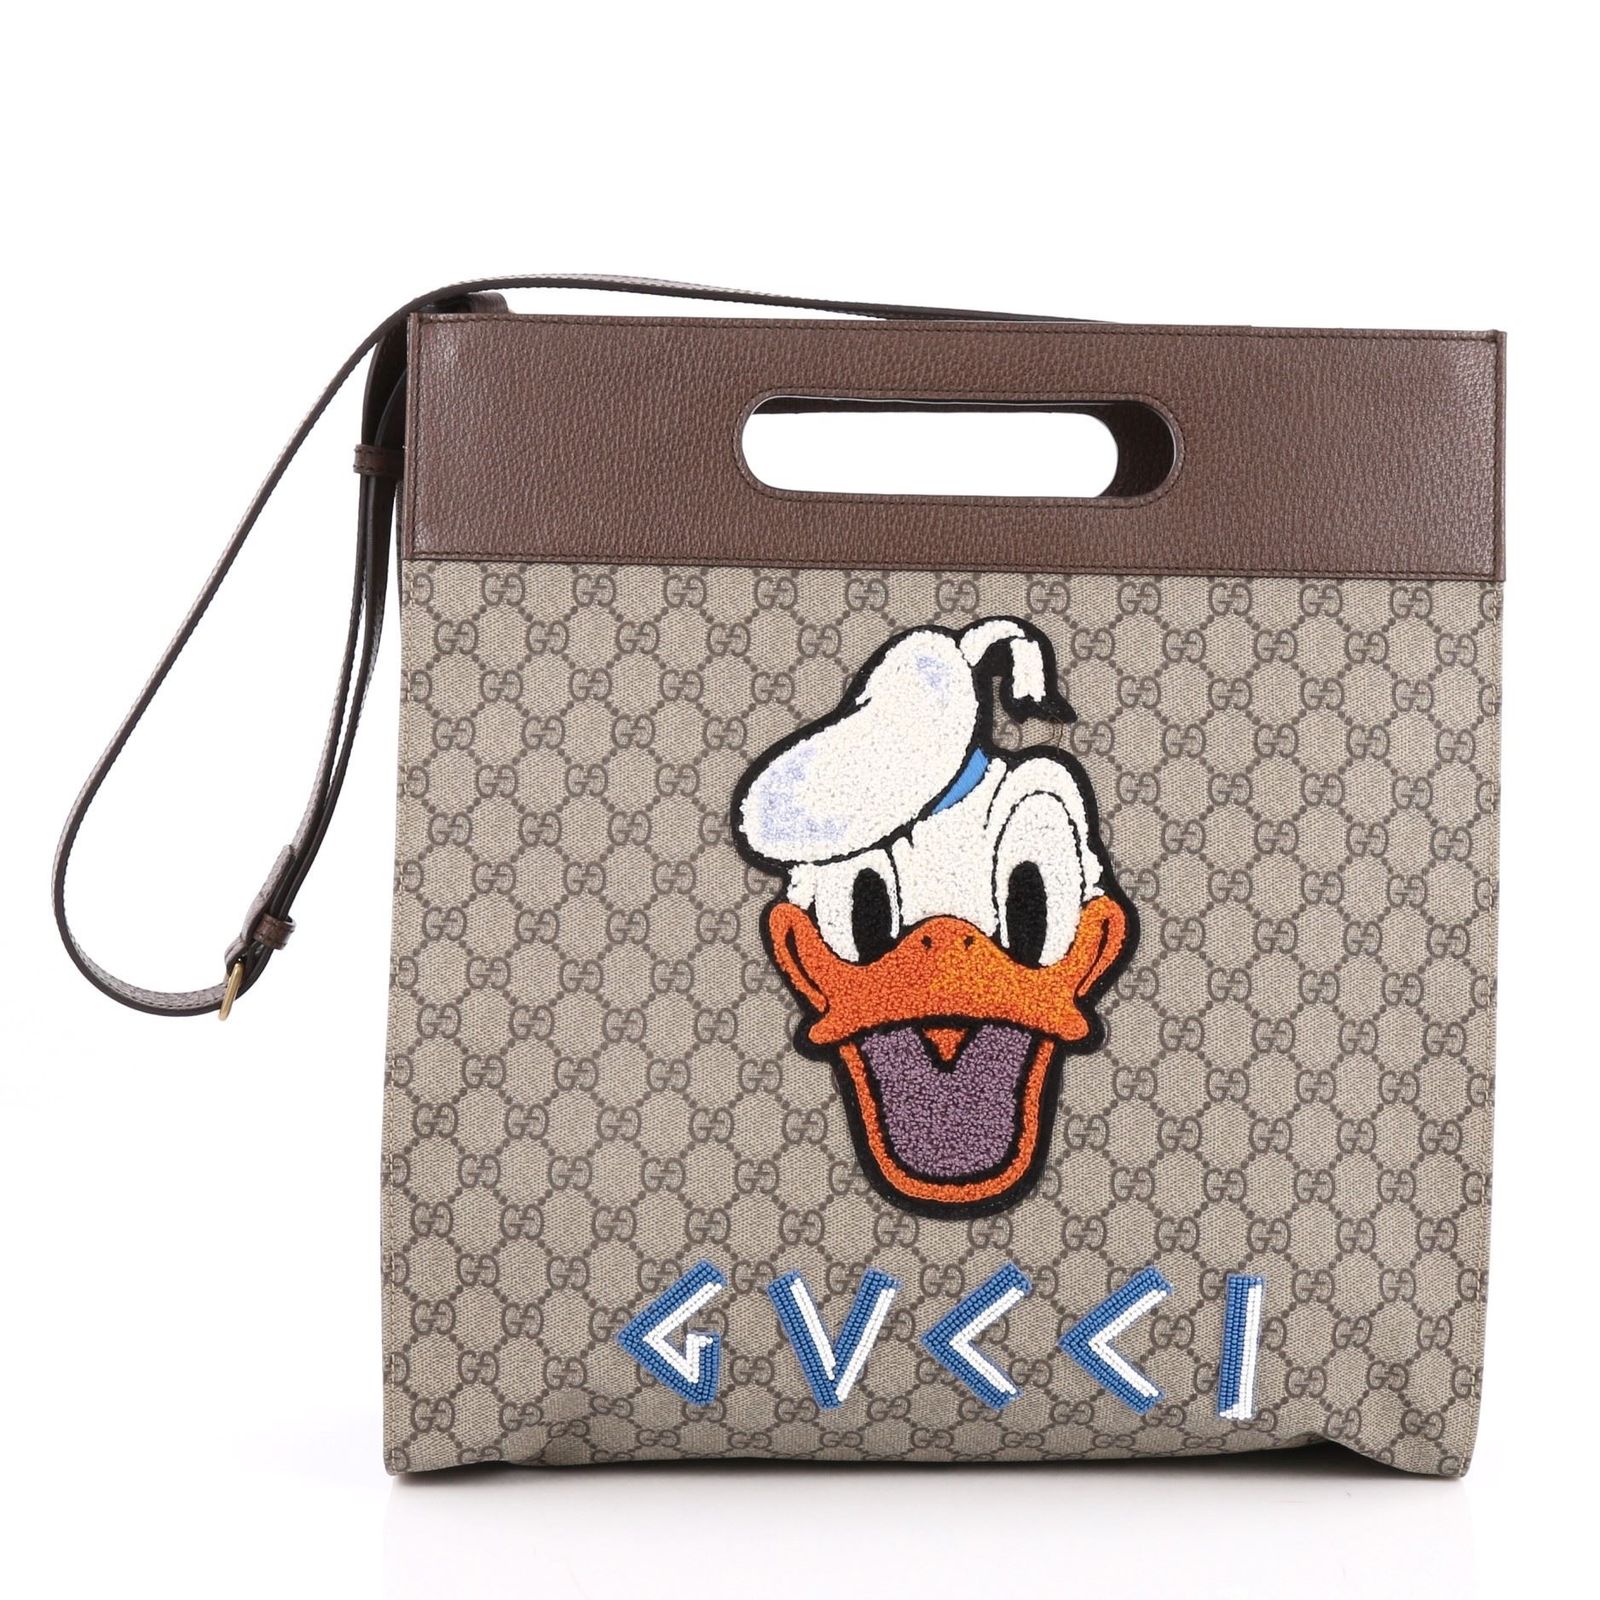 Donald Duck : 5 objets de collection les plus chers récemment vendus sur eBay